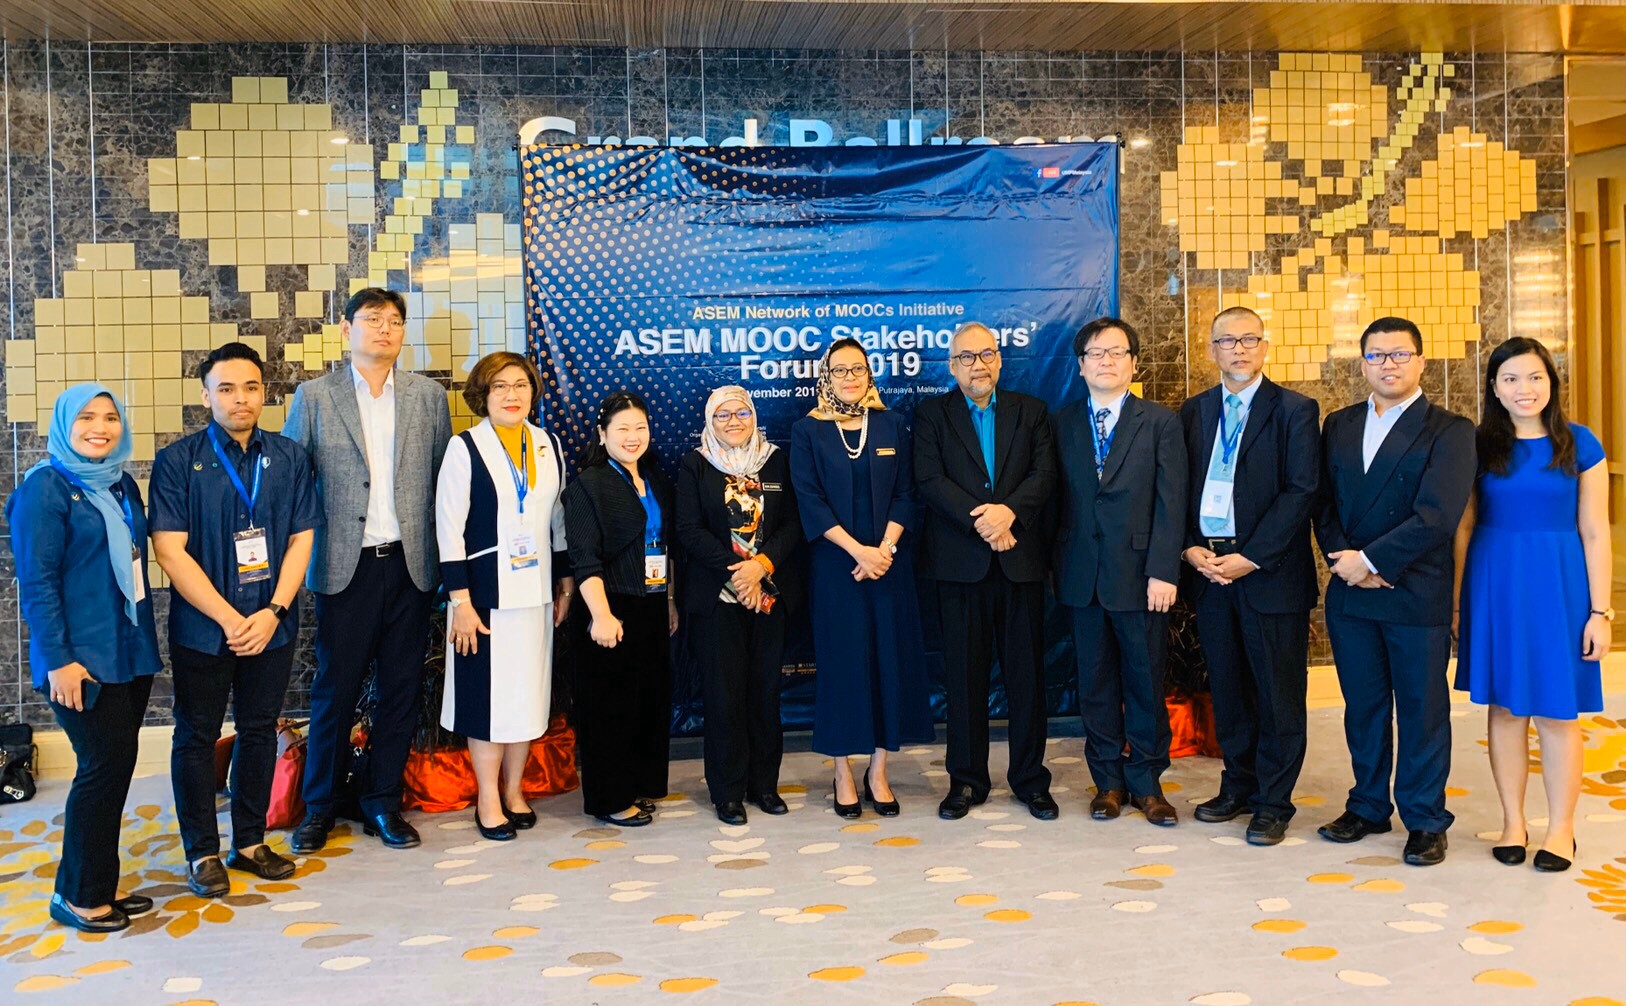 มฟล. ร่วมประชุม ASEM MOOCs Stakeholders Forum 2019